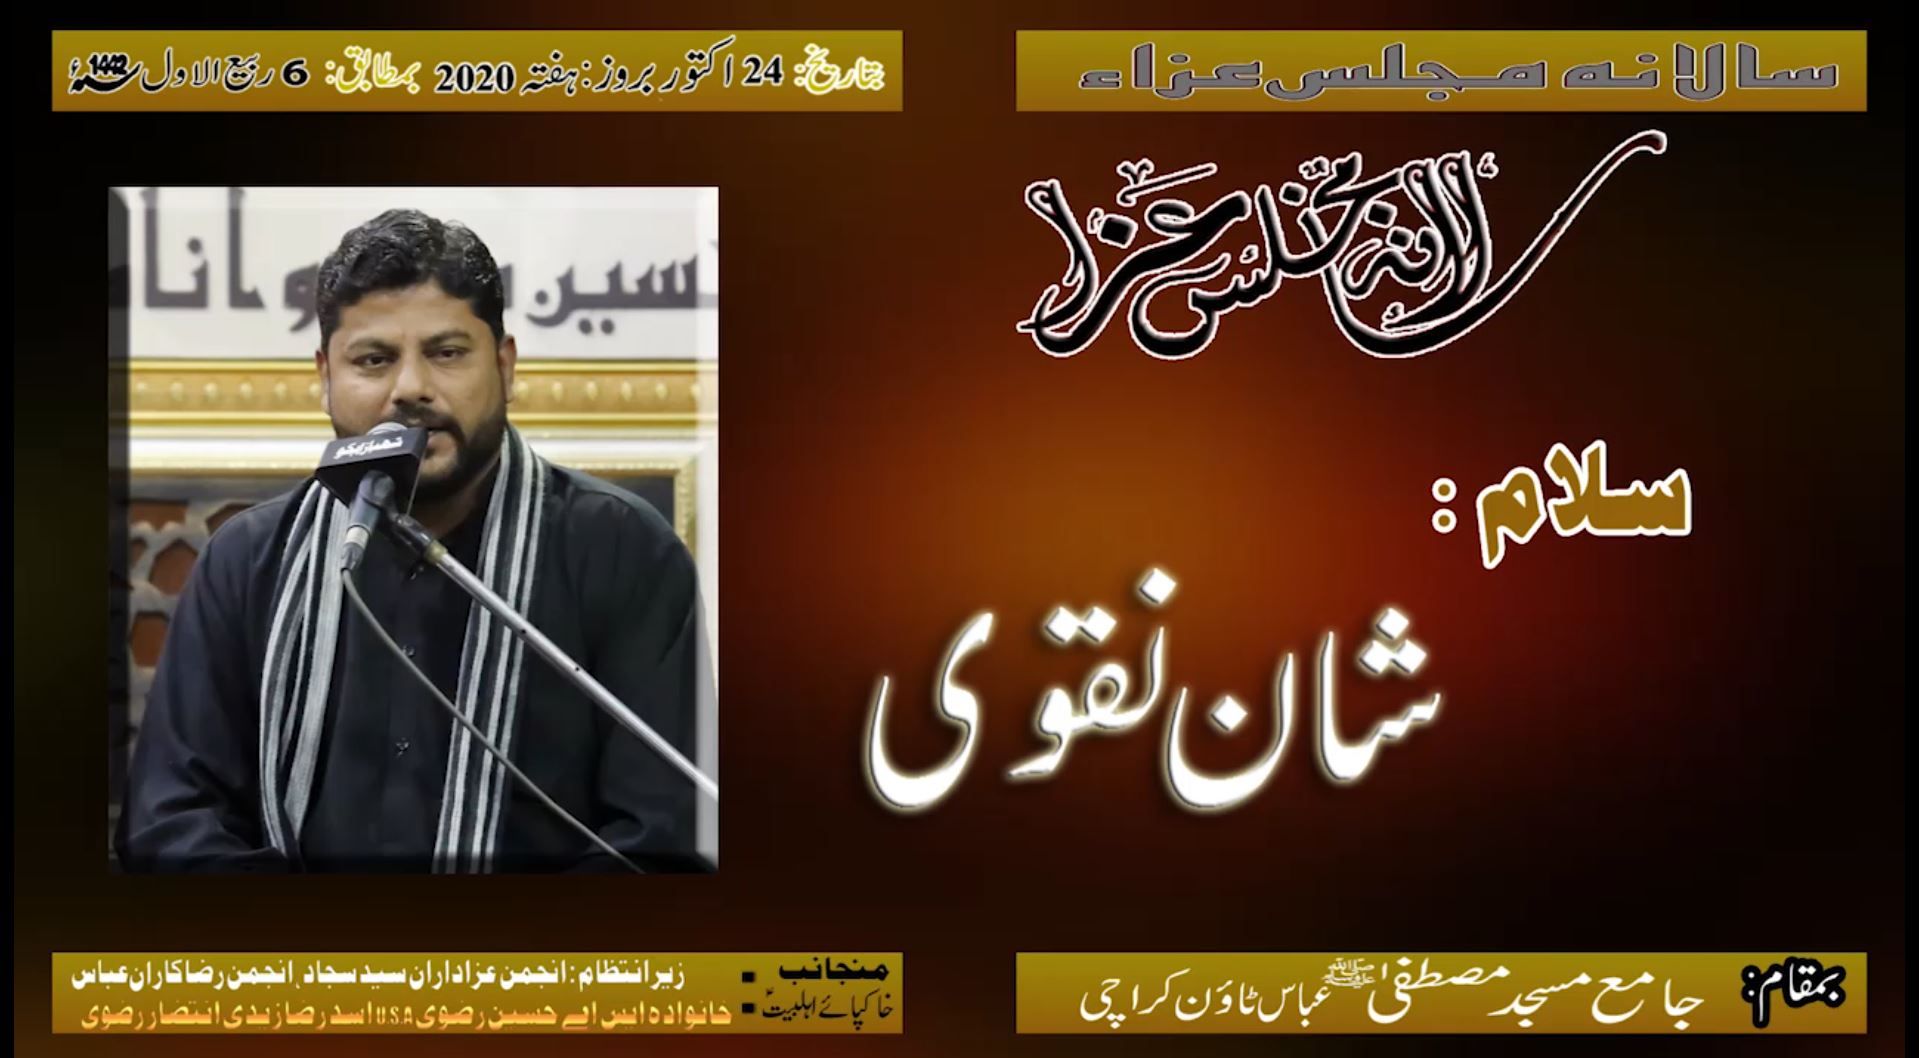 Salana Majlis-e-Aza | Salam - Shan Naqvi | 6th Rabi Awal 1442/2020 Jama Masjid Mustafa - Karachi